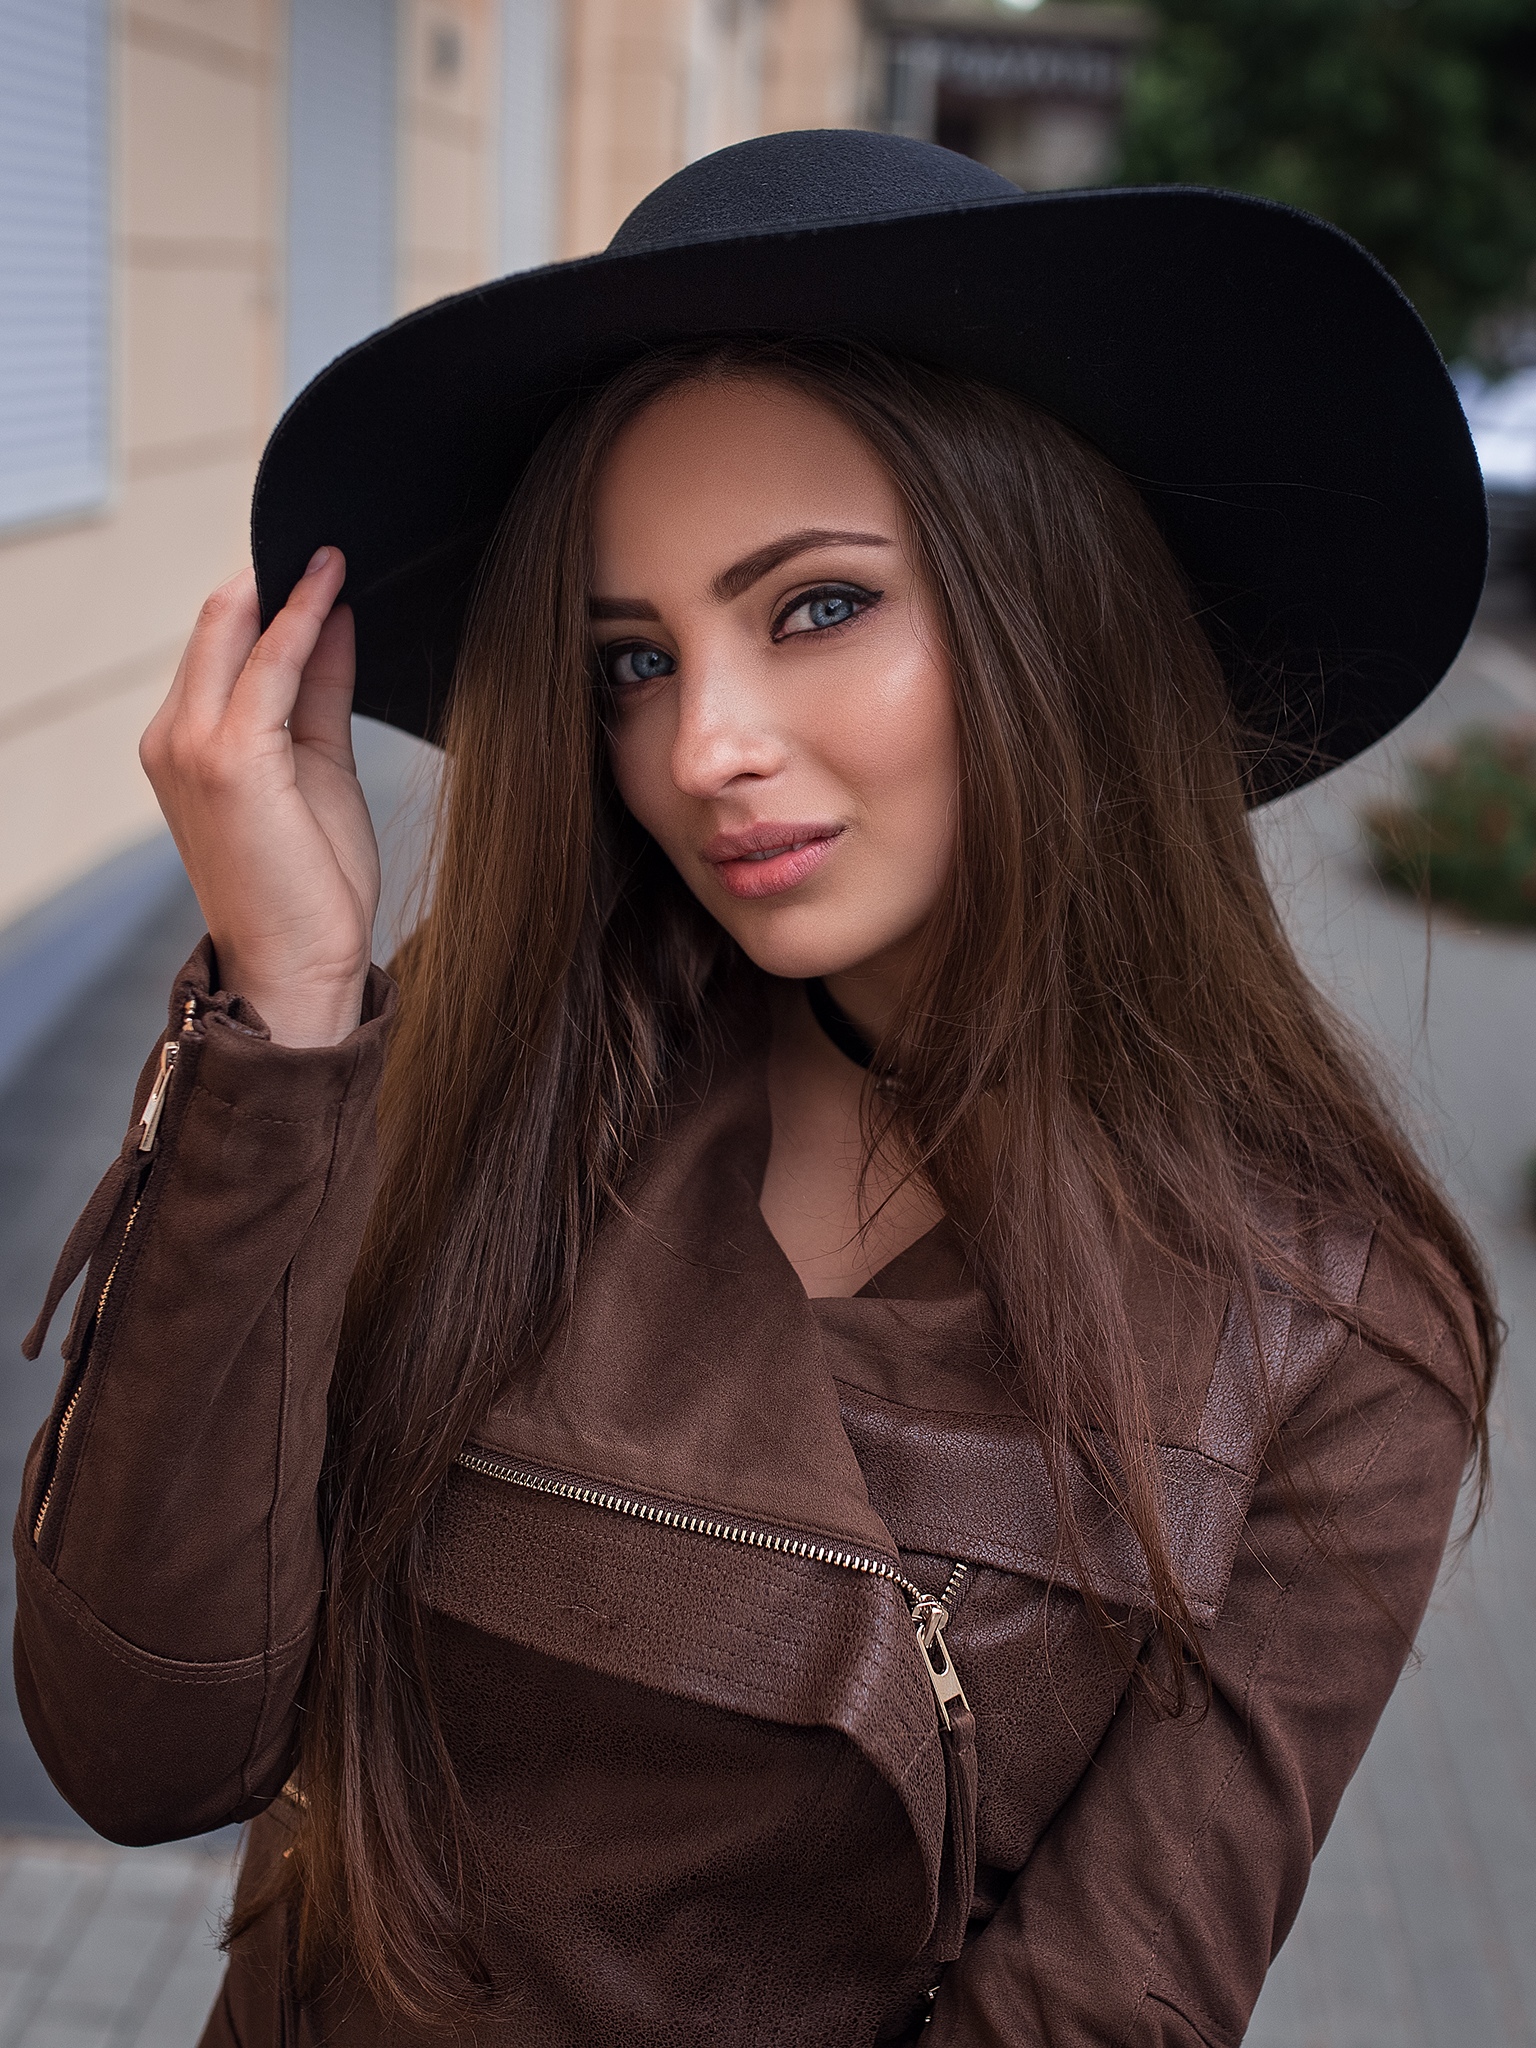 People 1536x2048 women model Dmitry Shulgin Veronika Avdeeva black hat brown jacket blue eyes brunette portrait display